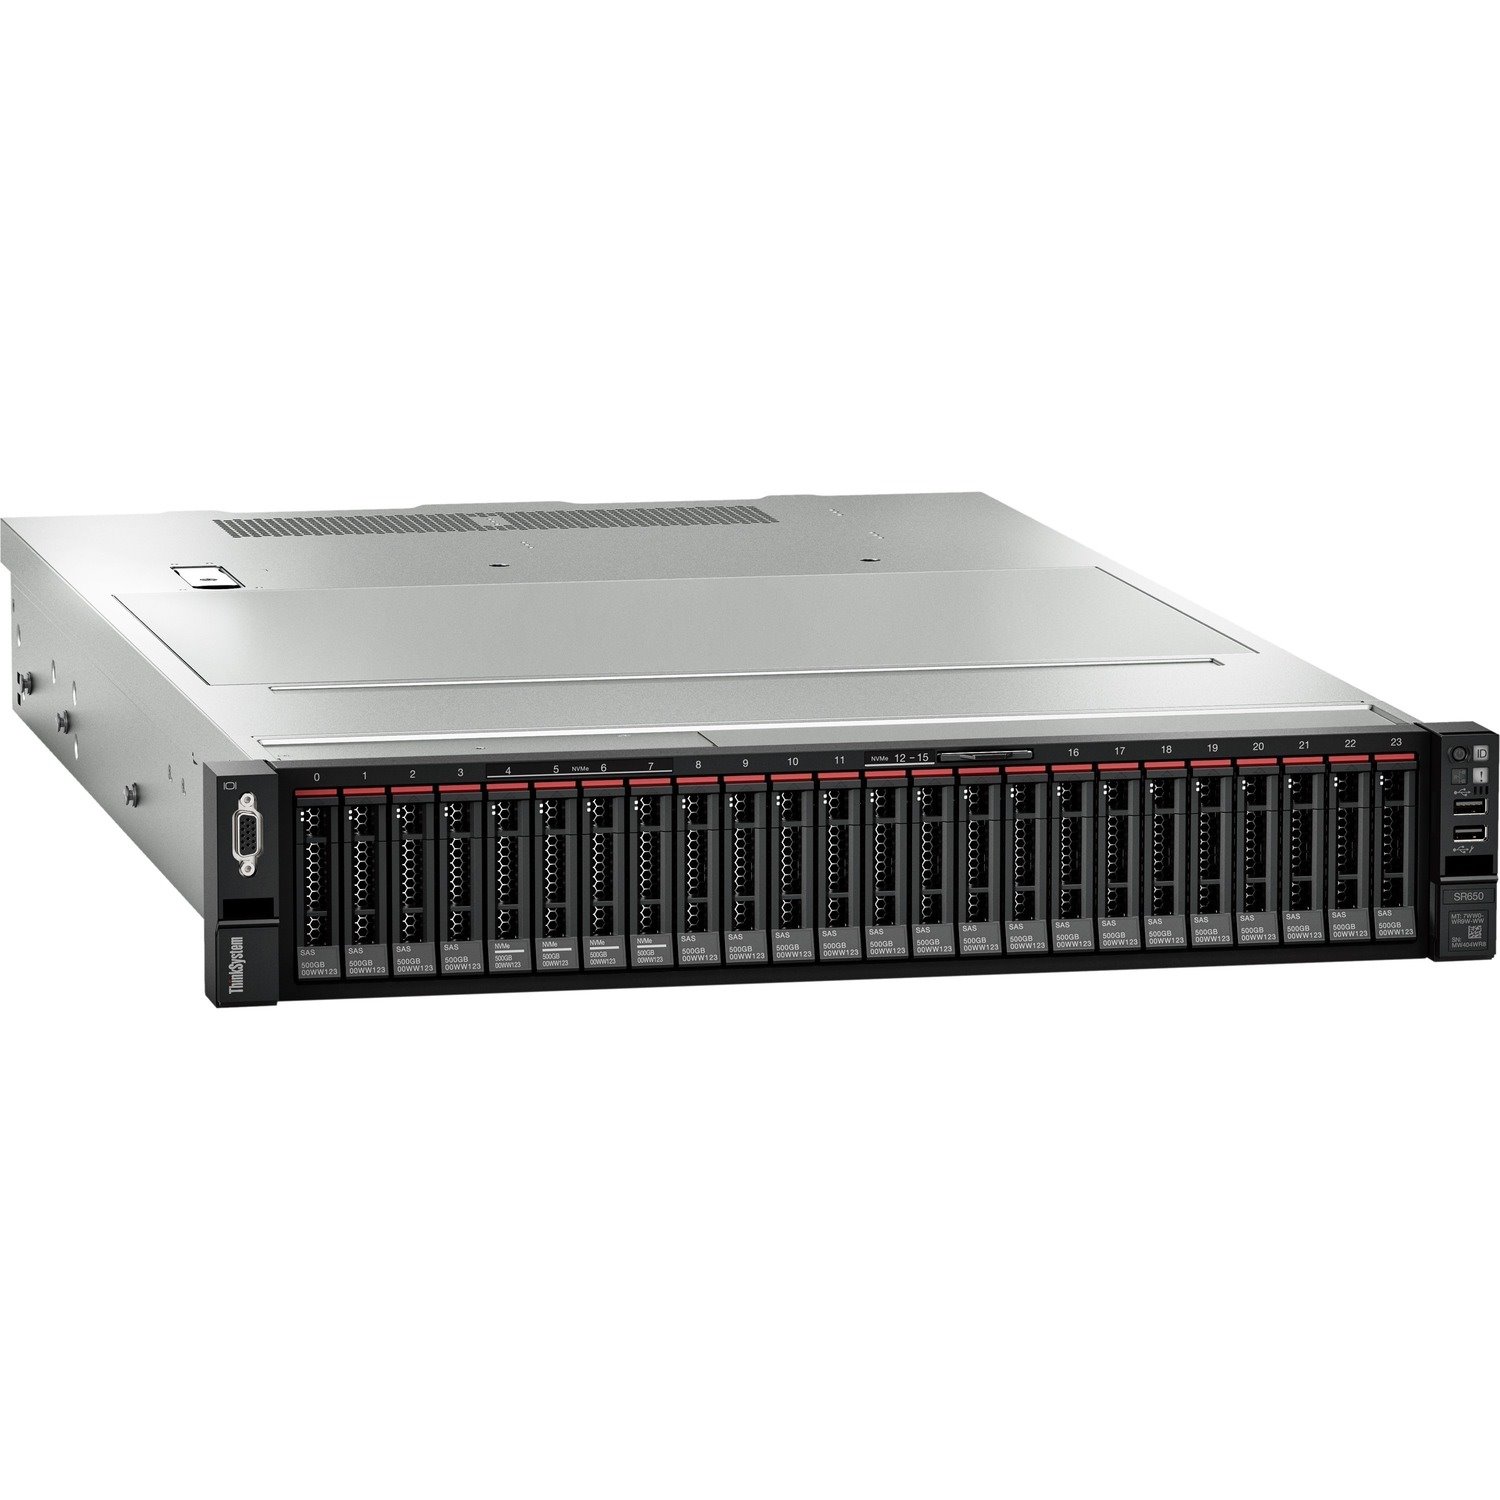 Lenovo ThinkSystem SR650 7X06A0NWEA 2U Rack Server - 1 x Intel Xeon Silver 4215R 3.20 GHz - 32 GB RAM - Serial ATA/600 Controller